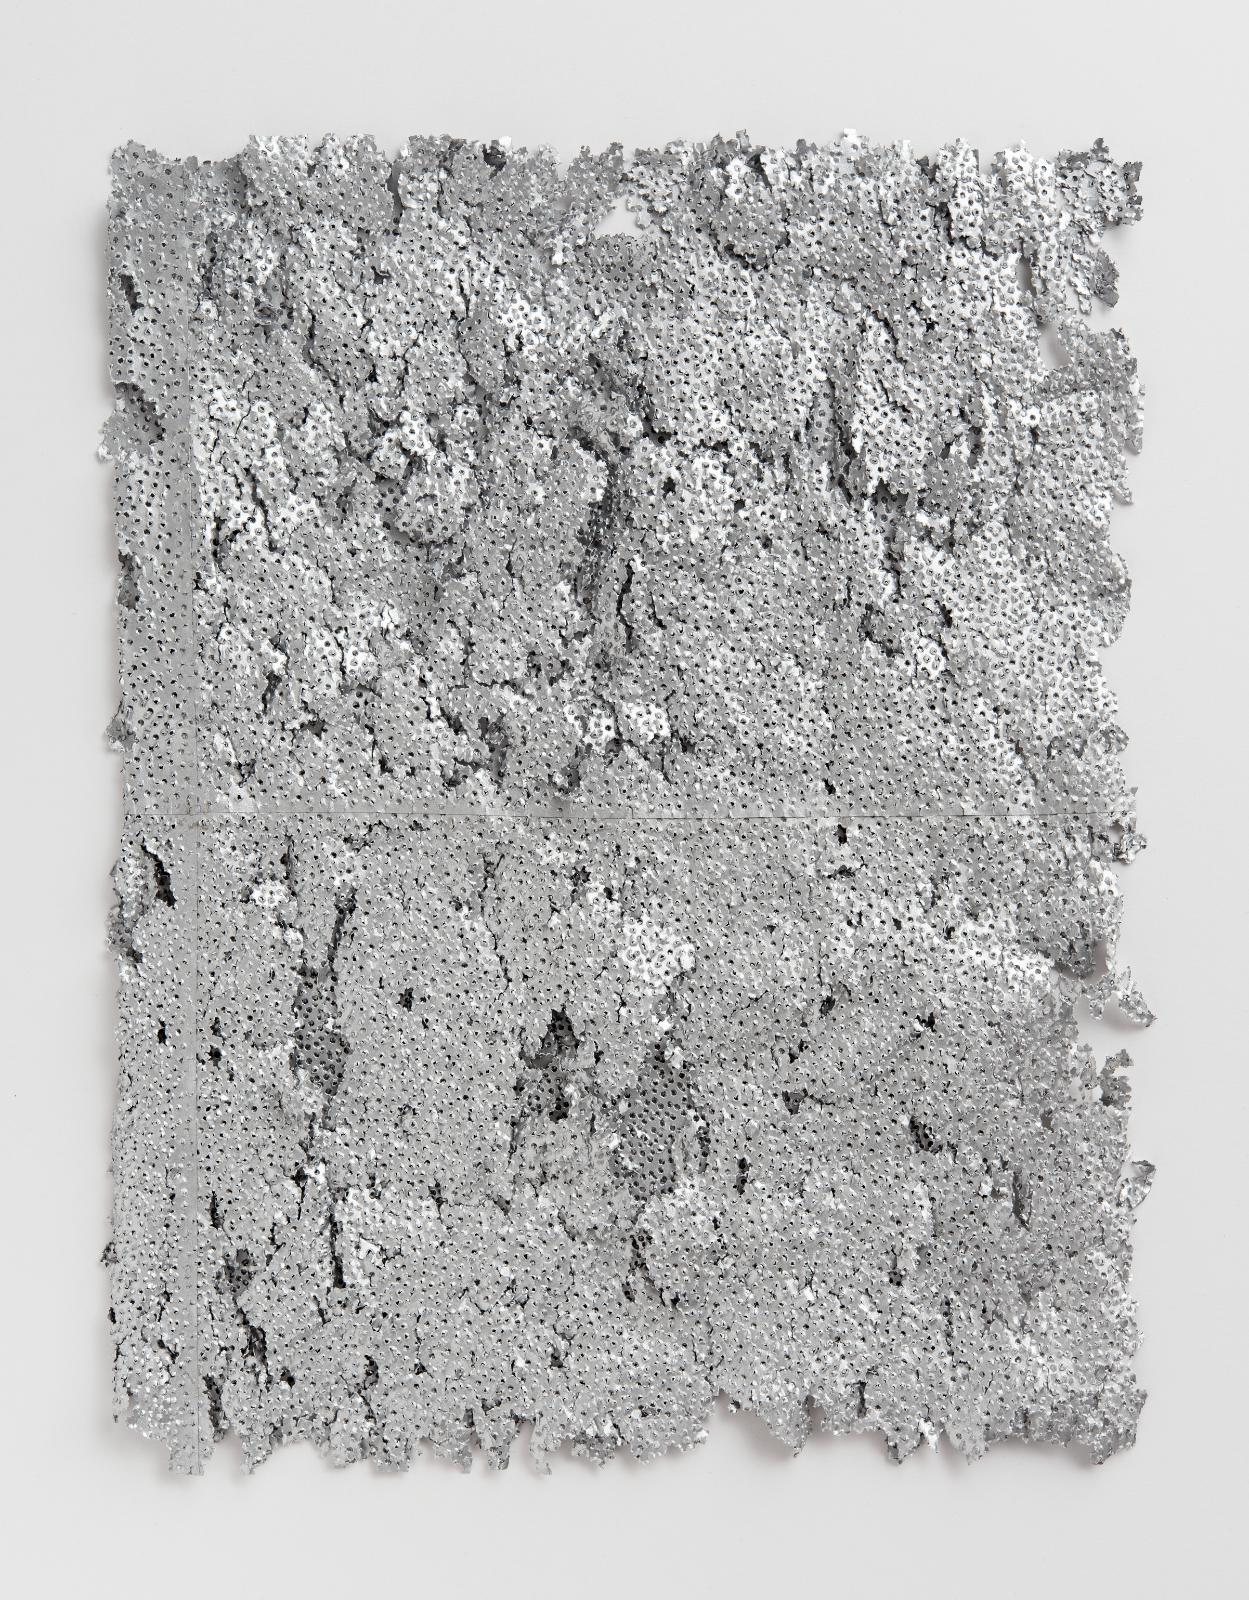 Martin Bruno Schmid, Bohrzeichnung, 2012, Bleistiftbohrung in aluminiumbedampftes Papier, 56 x 47 cm, Preis auf Anfrage